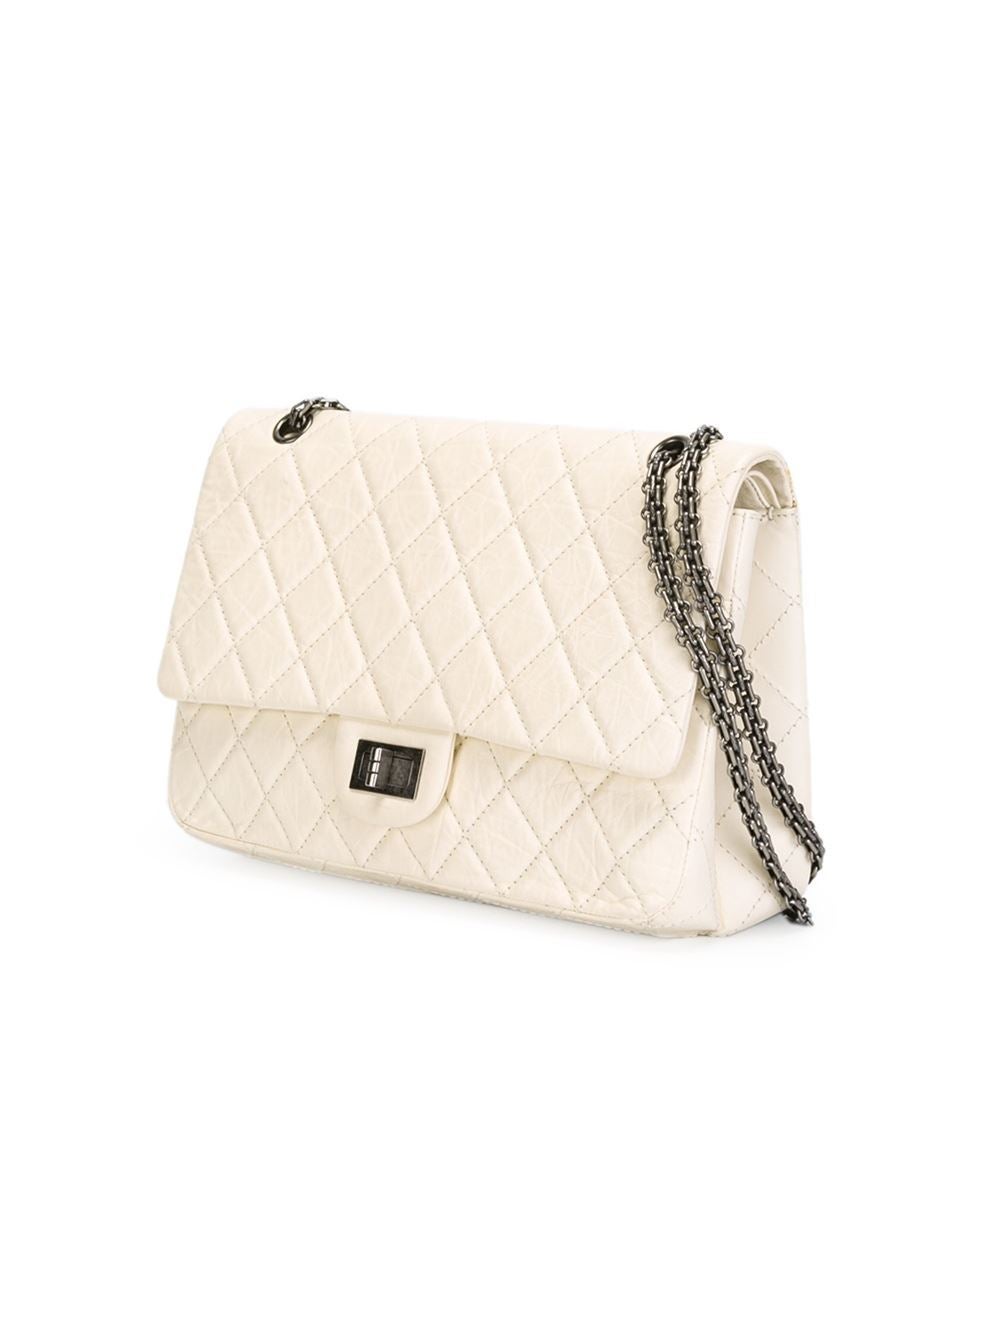 Beige Chanel Reissue Flap Shoulder Bag